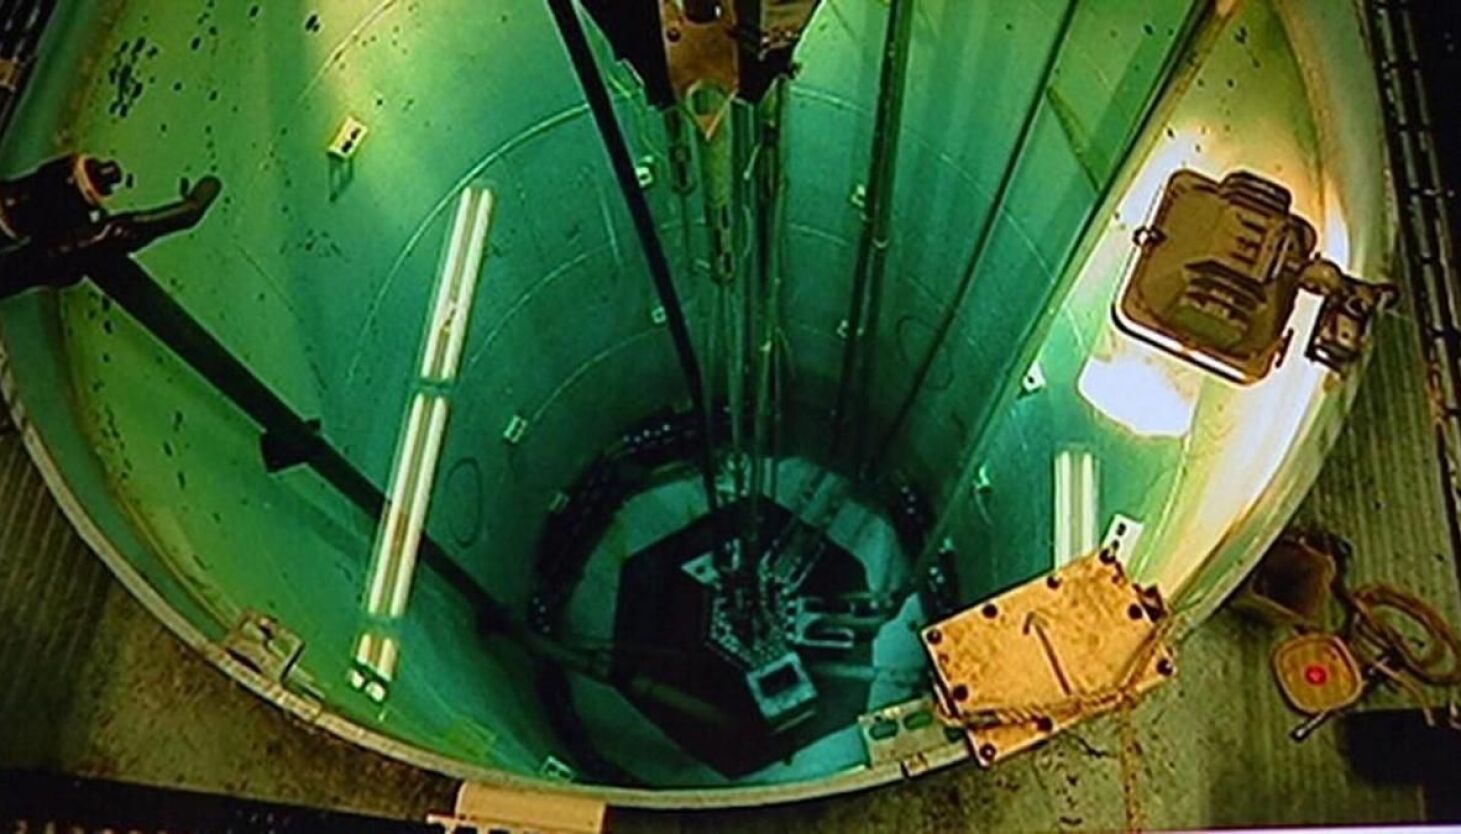 Utah Nuclear Engineering Program